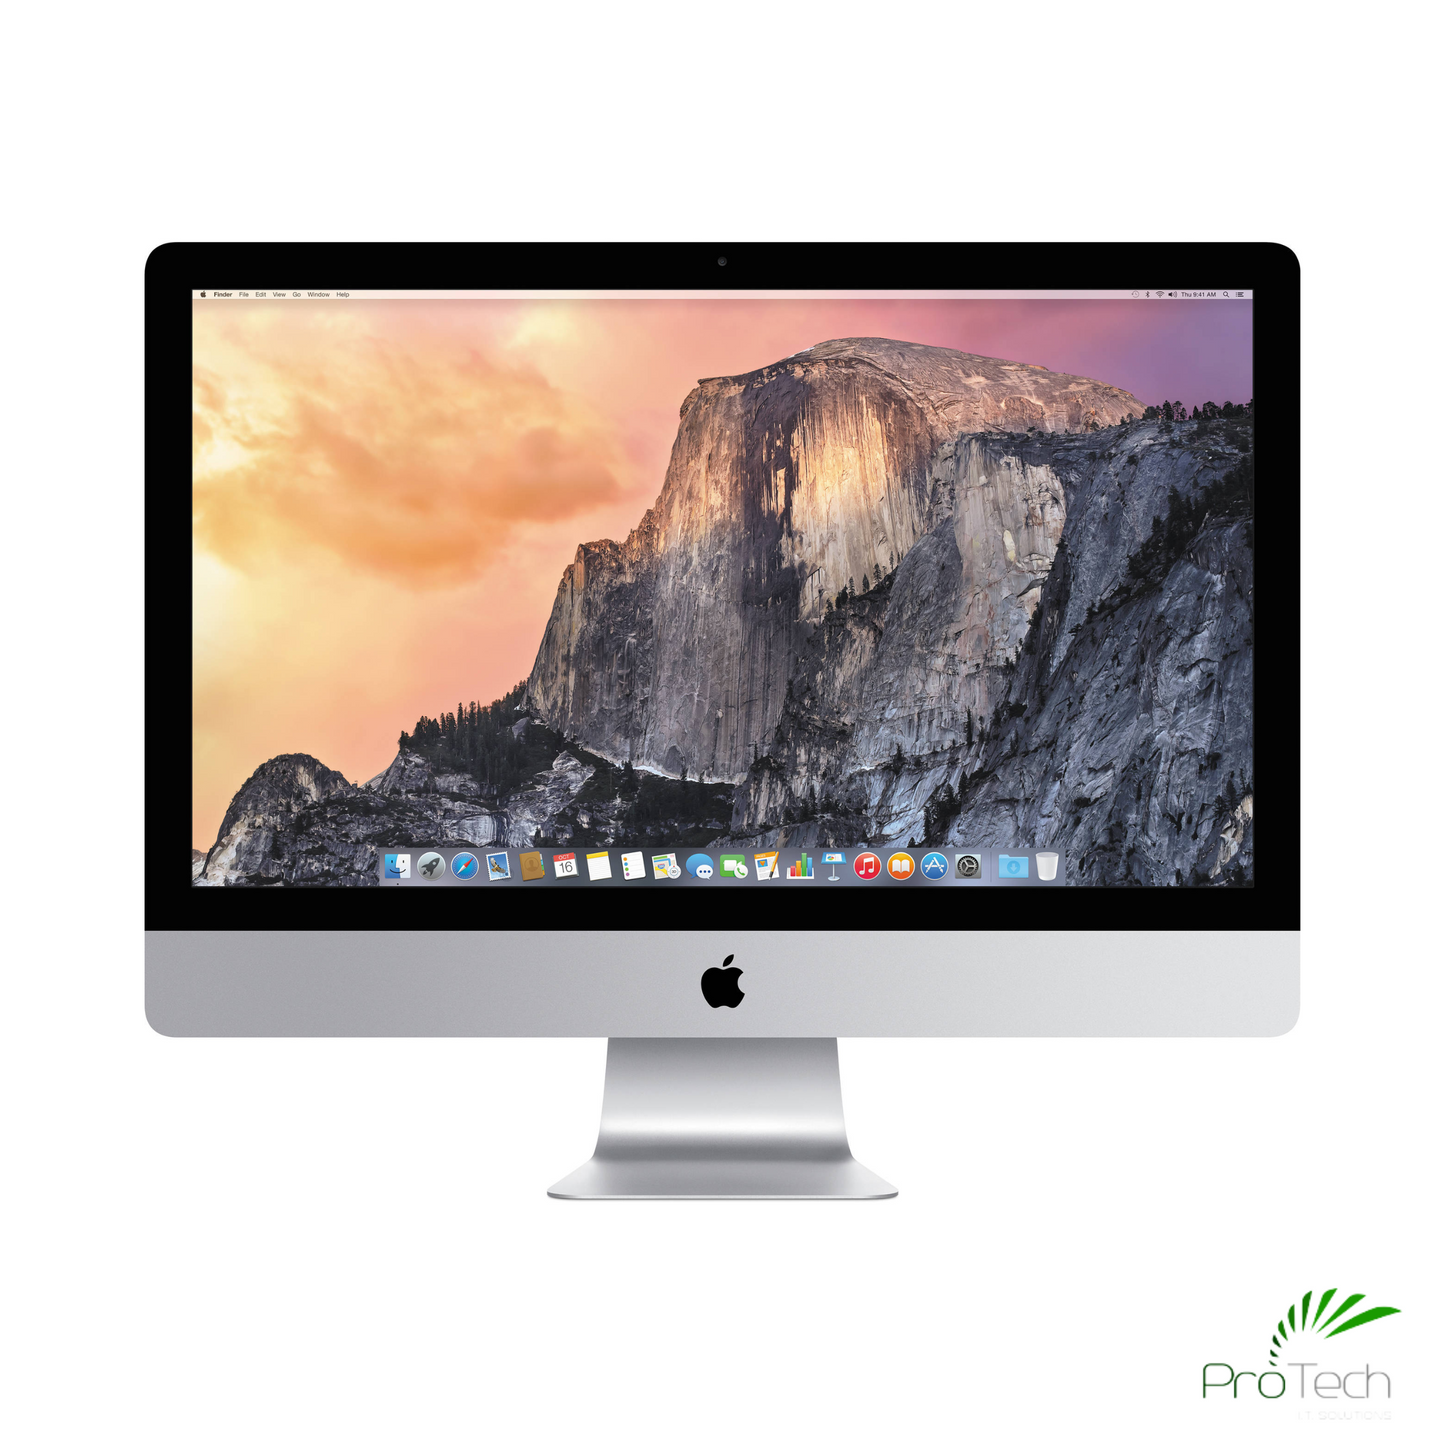 Apple iMac 27” Retina 5K (2015) | Core i5 | 16GB RAM | 1TB HDD | Radeon R9 GPU